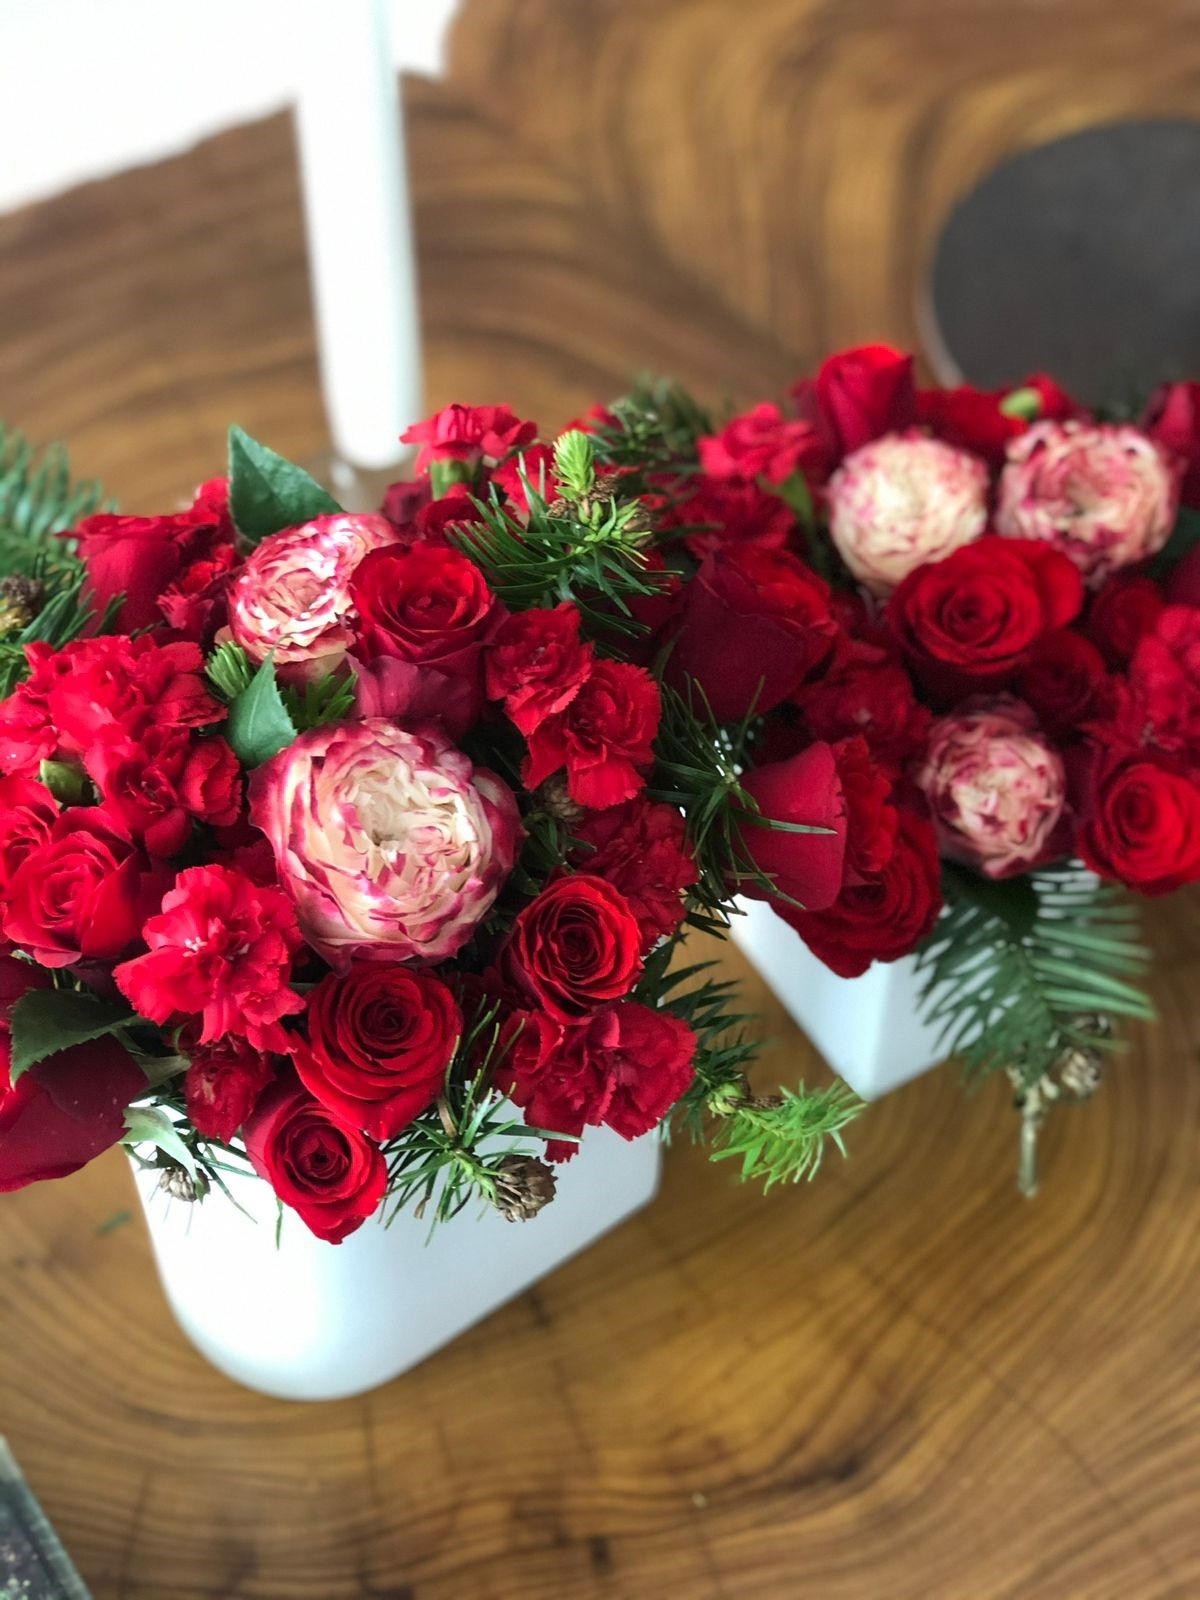 A flor branca e vermelha é um tipo de rosa especial, chamada “garden rose” e seu nome de comercialização é rosa “apple jack”. Dentre as folhagens natalinas, temos o cedro com pinhas nas pontas (Foto: Arquivo pessoal / Carol Scaff)